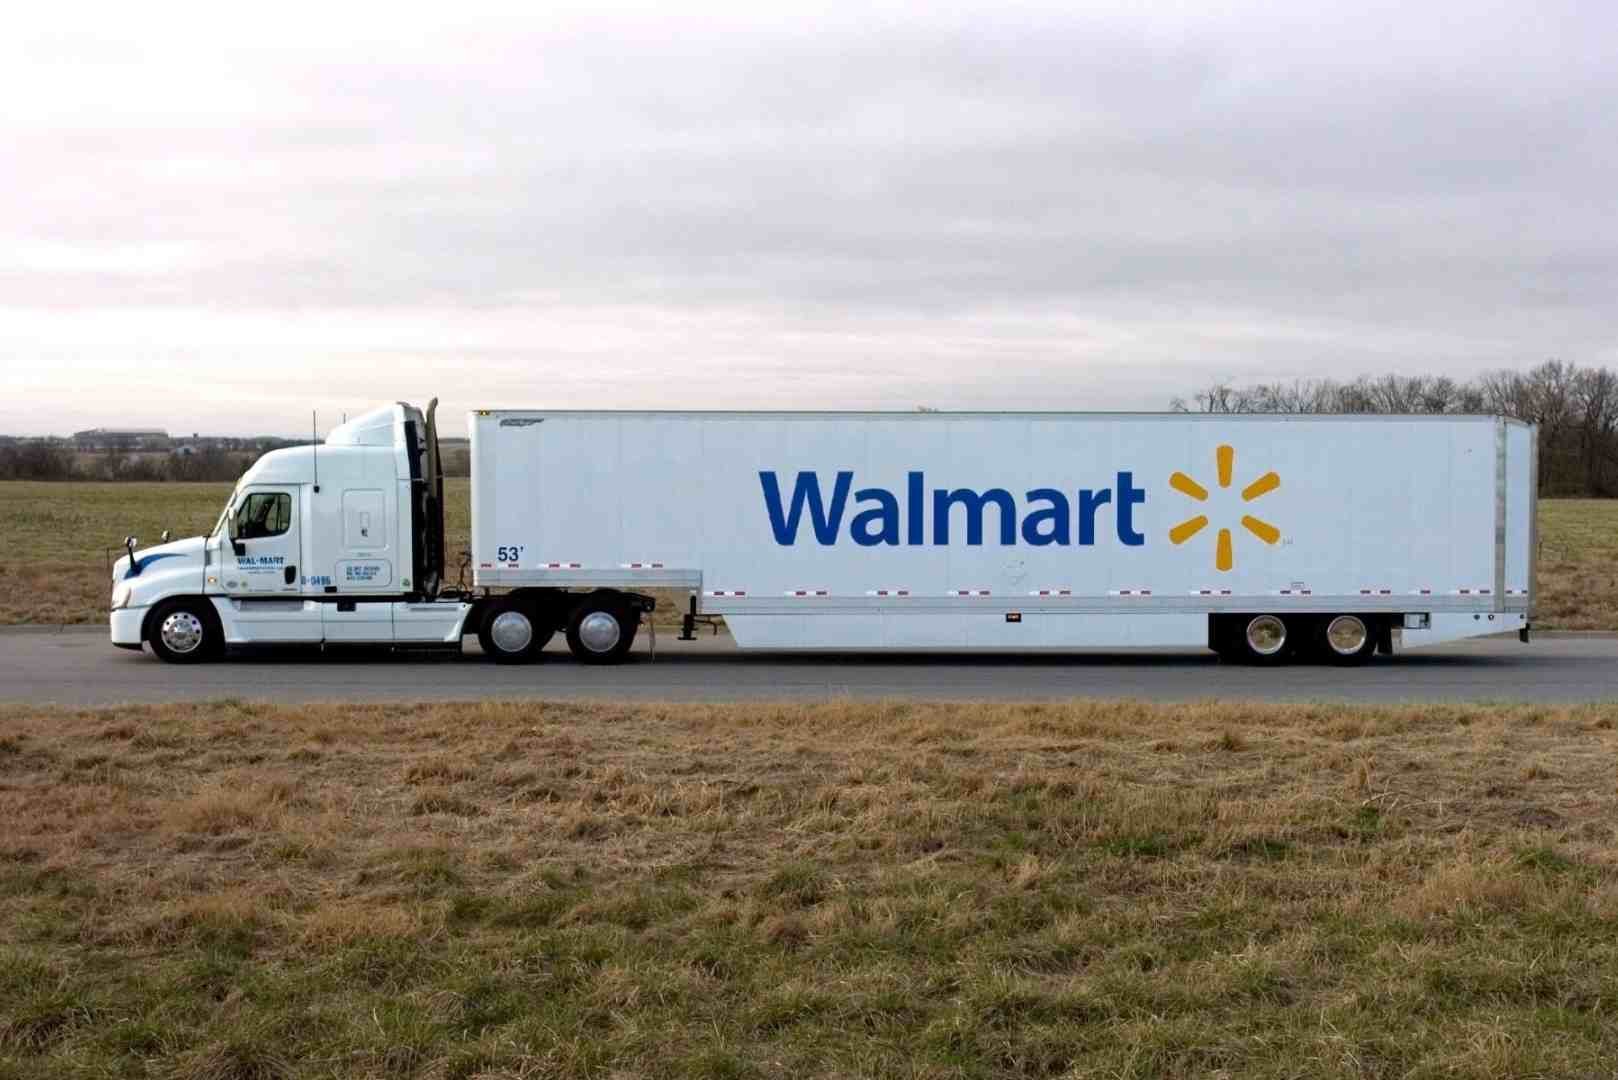 Walmart truck traveling interstate